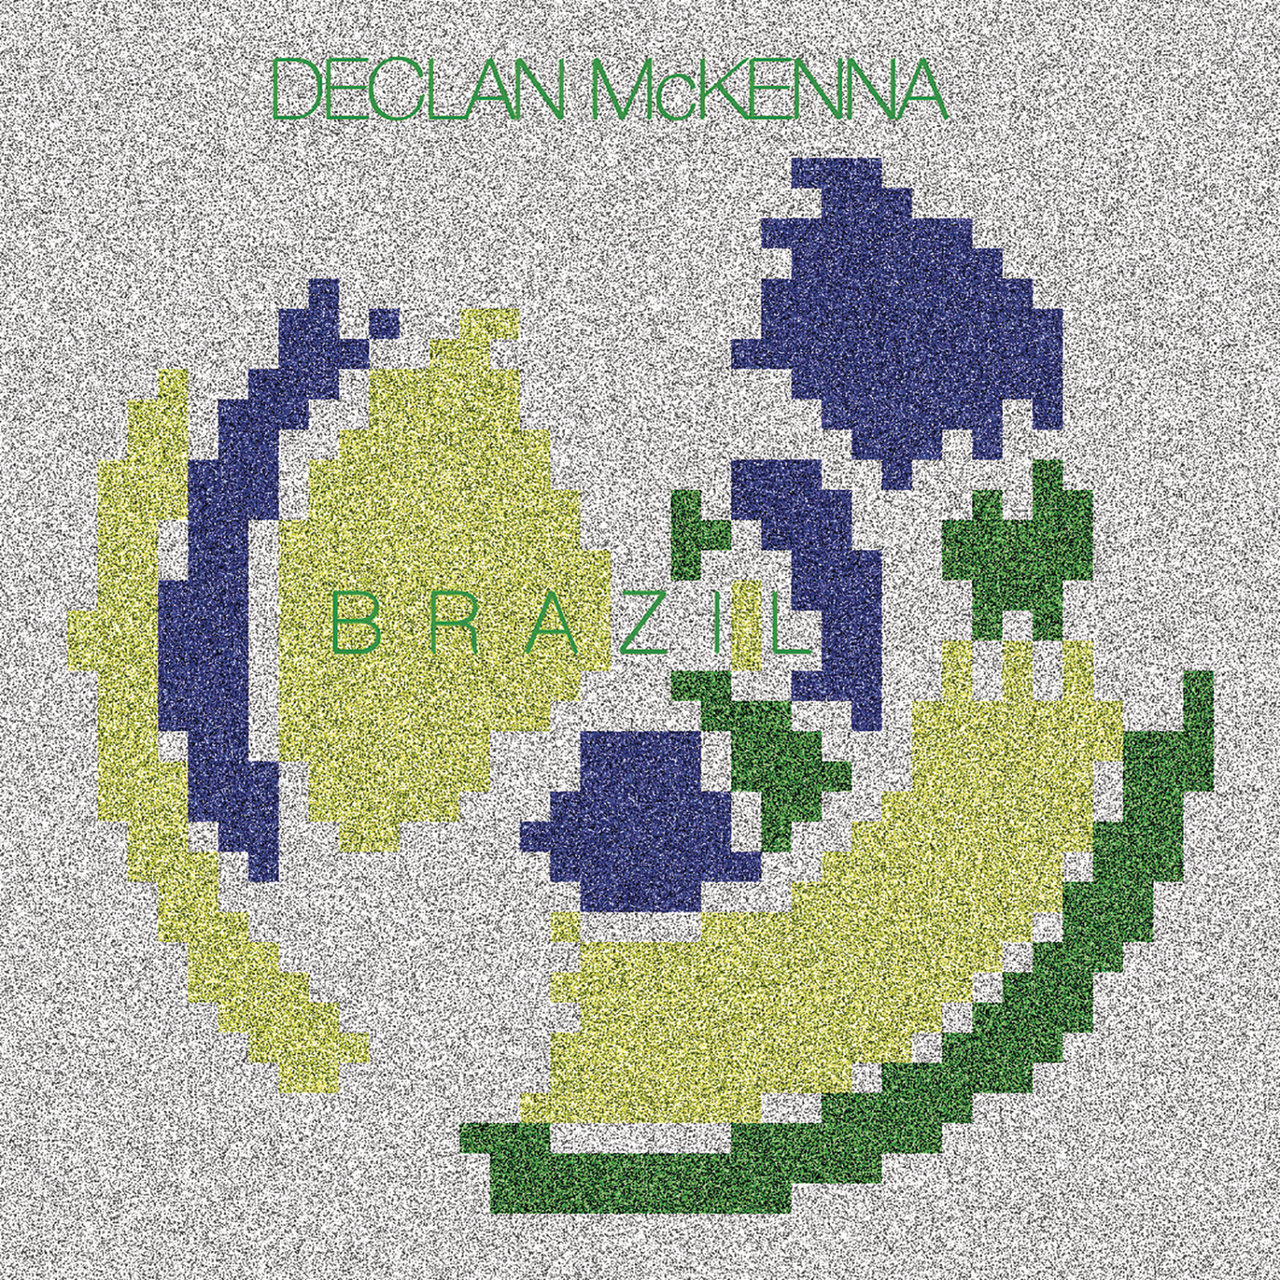 Declan McKenna — Brazil cover artwork